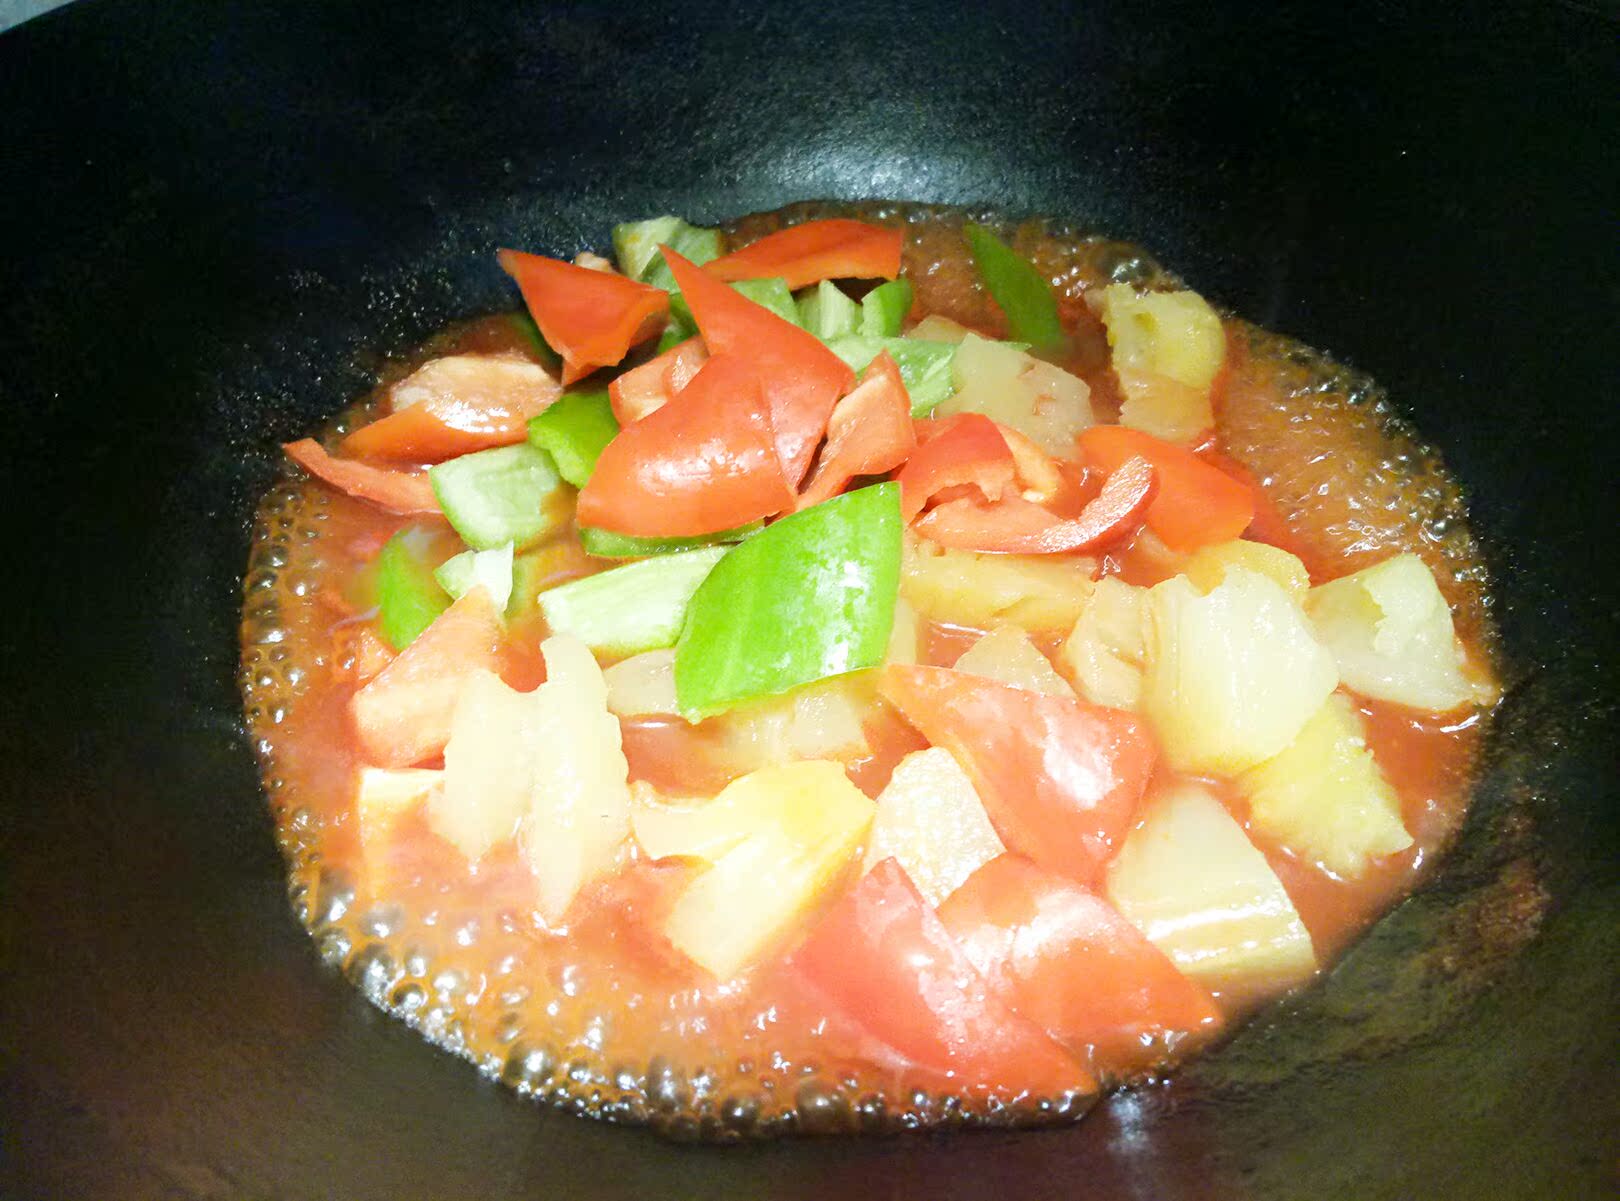 炒青红椒和菠萝,略加一点点淀粉收汁,加入炸好的肉块裹上酱汁出锅即可